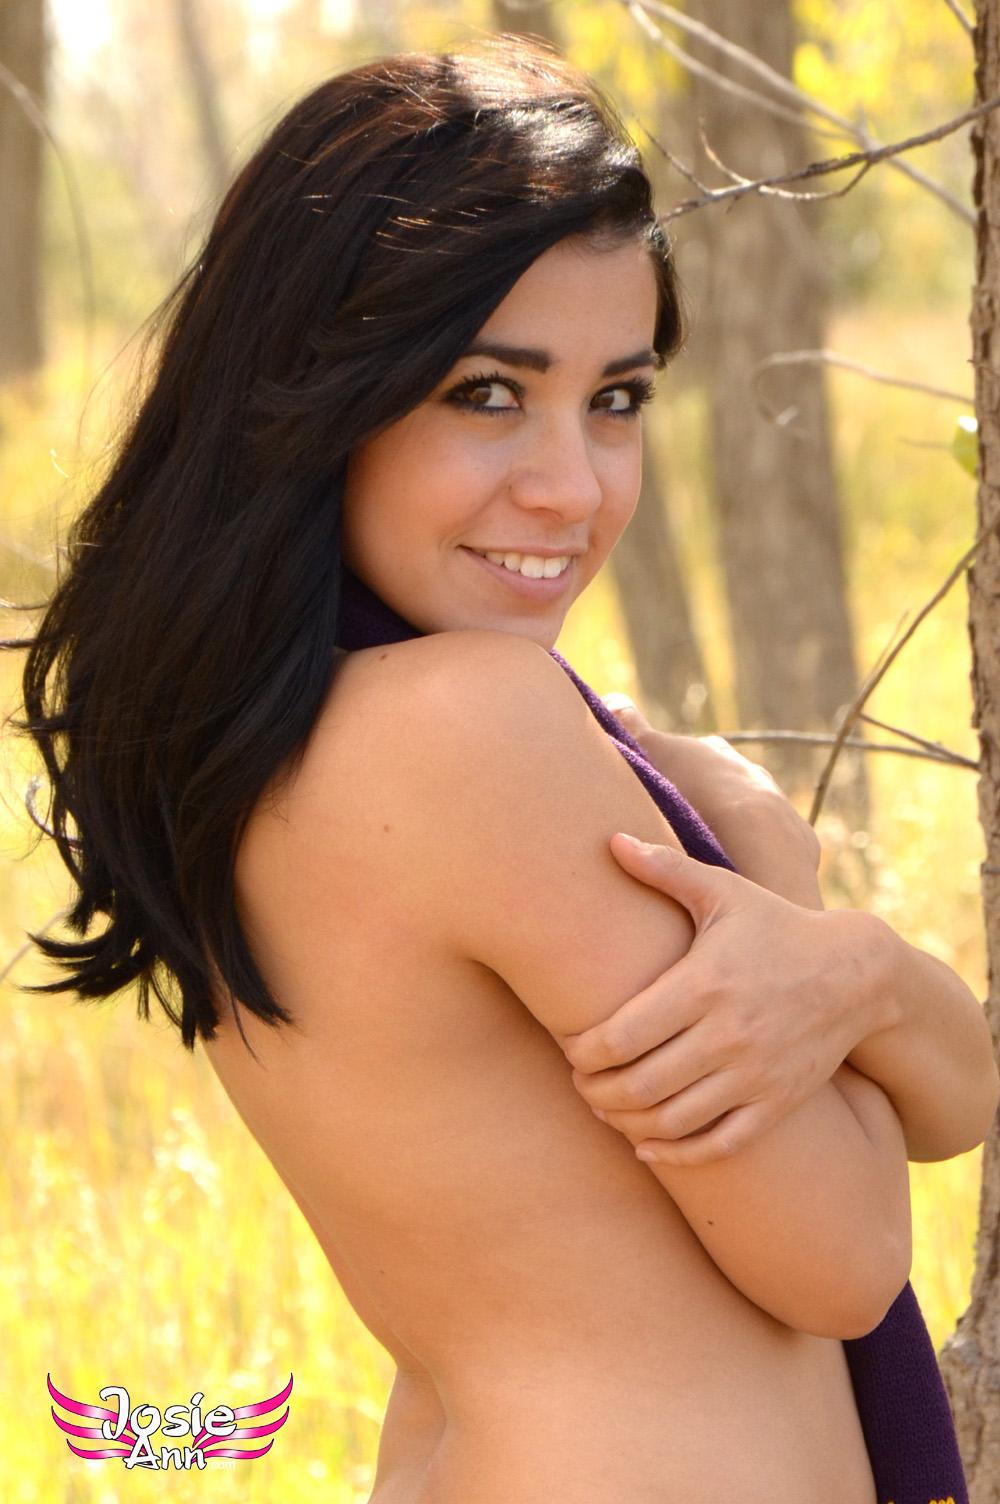 Brunette teen Josie Ann strips naked outside on a lovely fall day #55650482